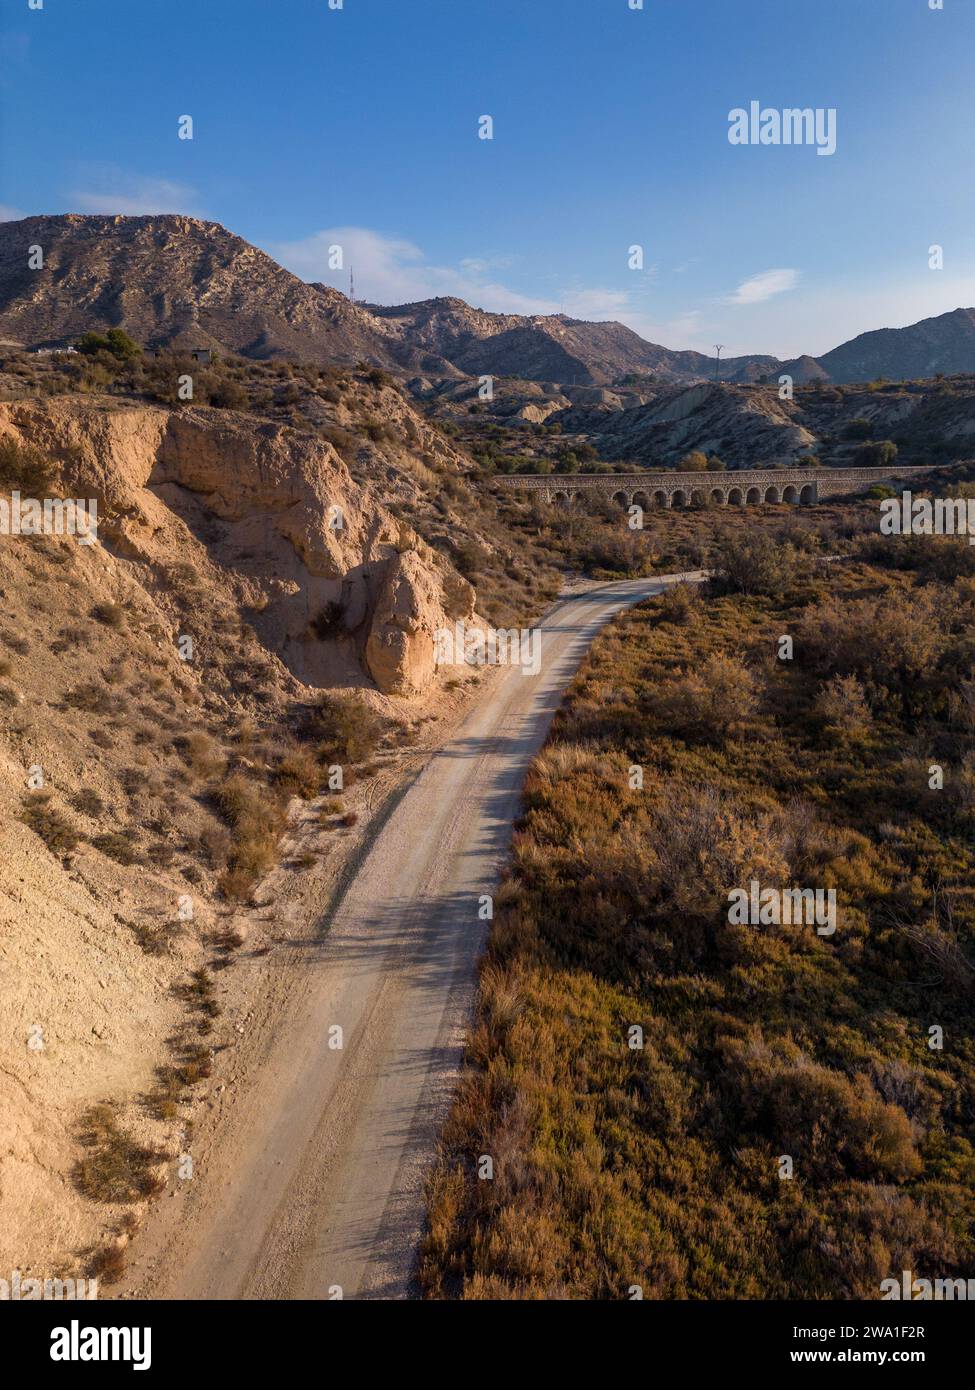 Feldweg in trockener Wüstenlandschaft mit fernen Klippen und Morgensonnenlicht, Elche, Provinz Alicante, Spanien – Stockfoto Stockfoto